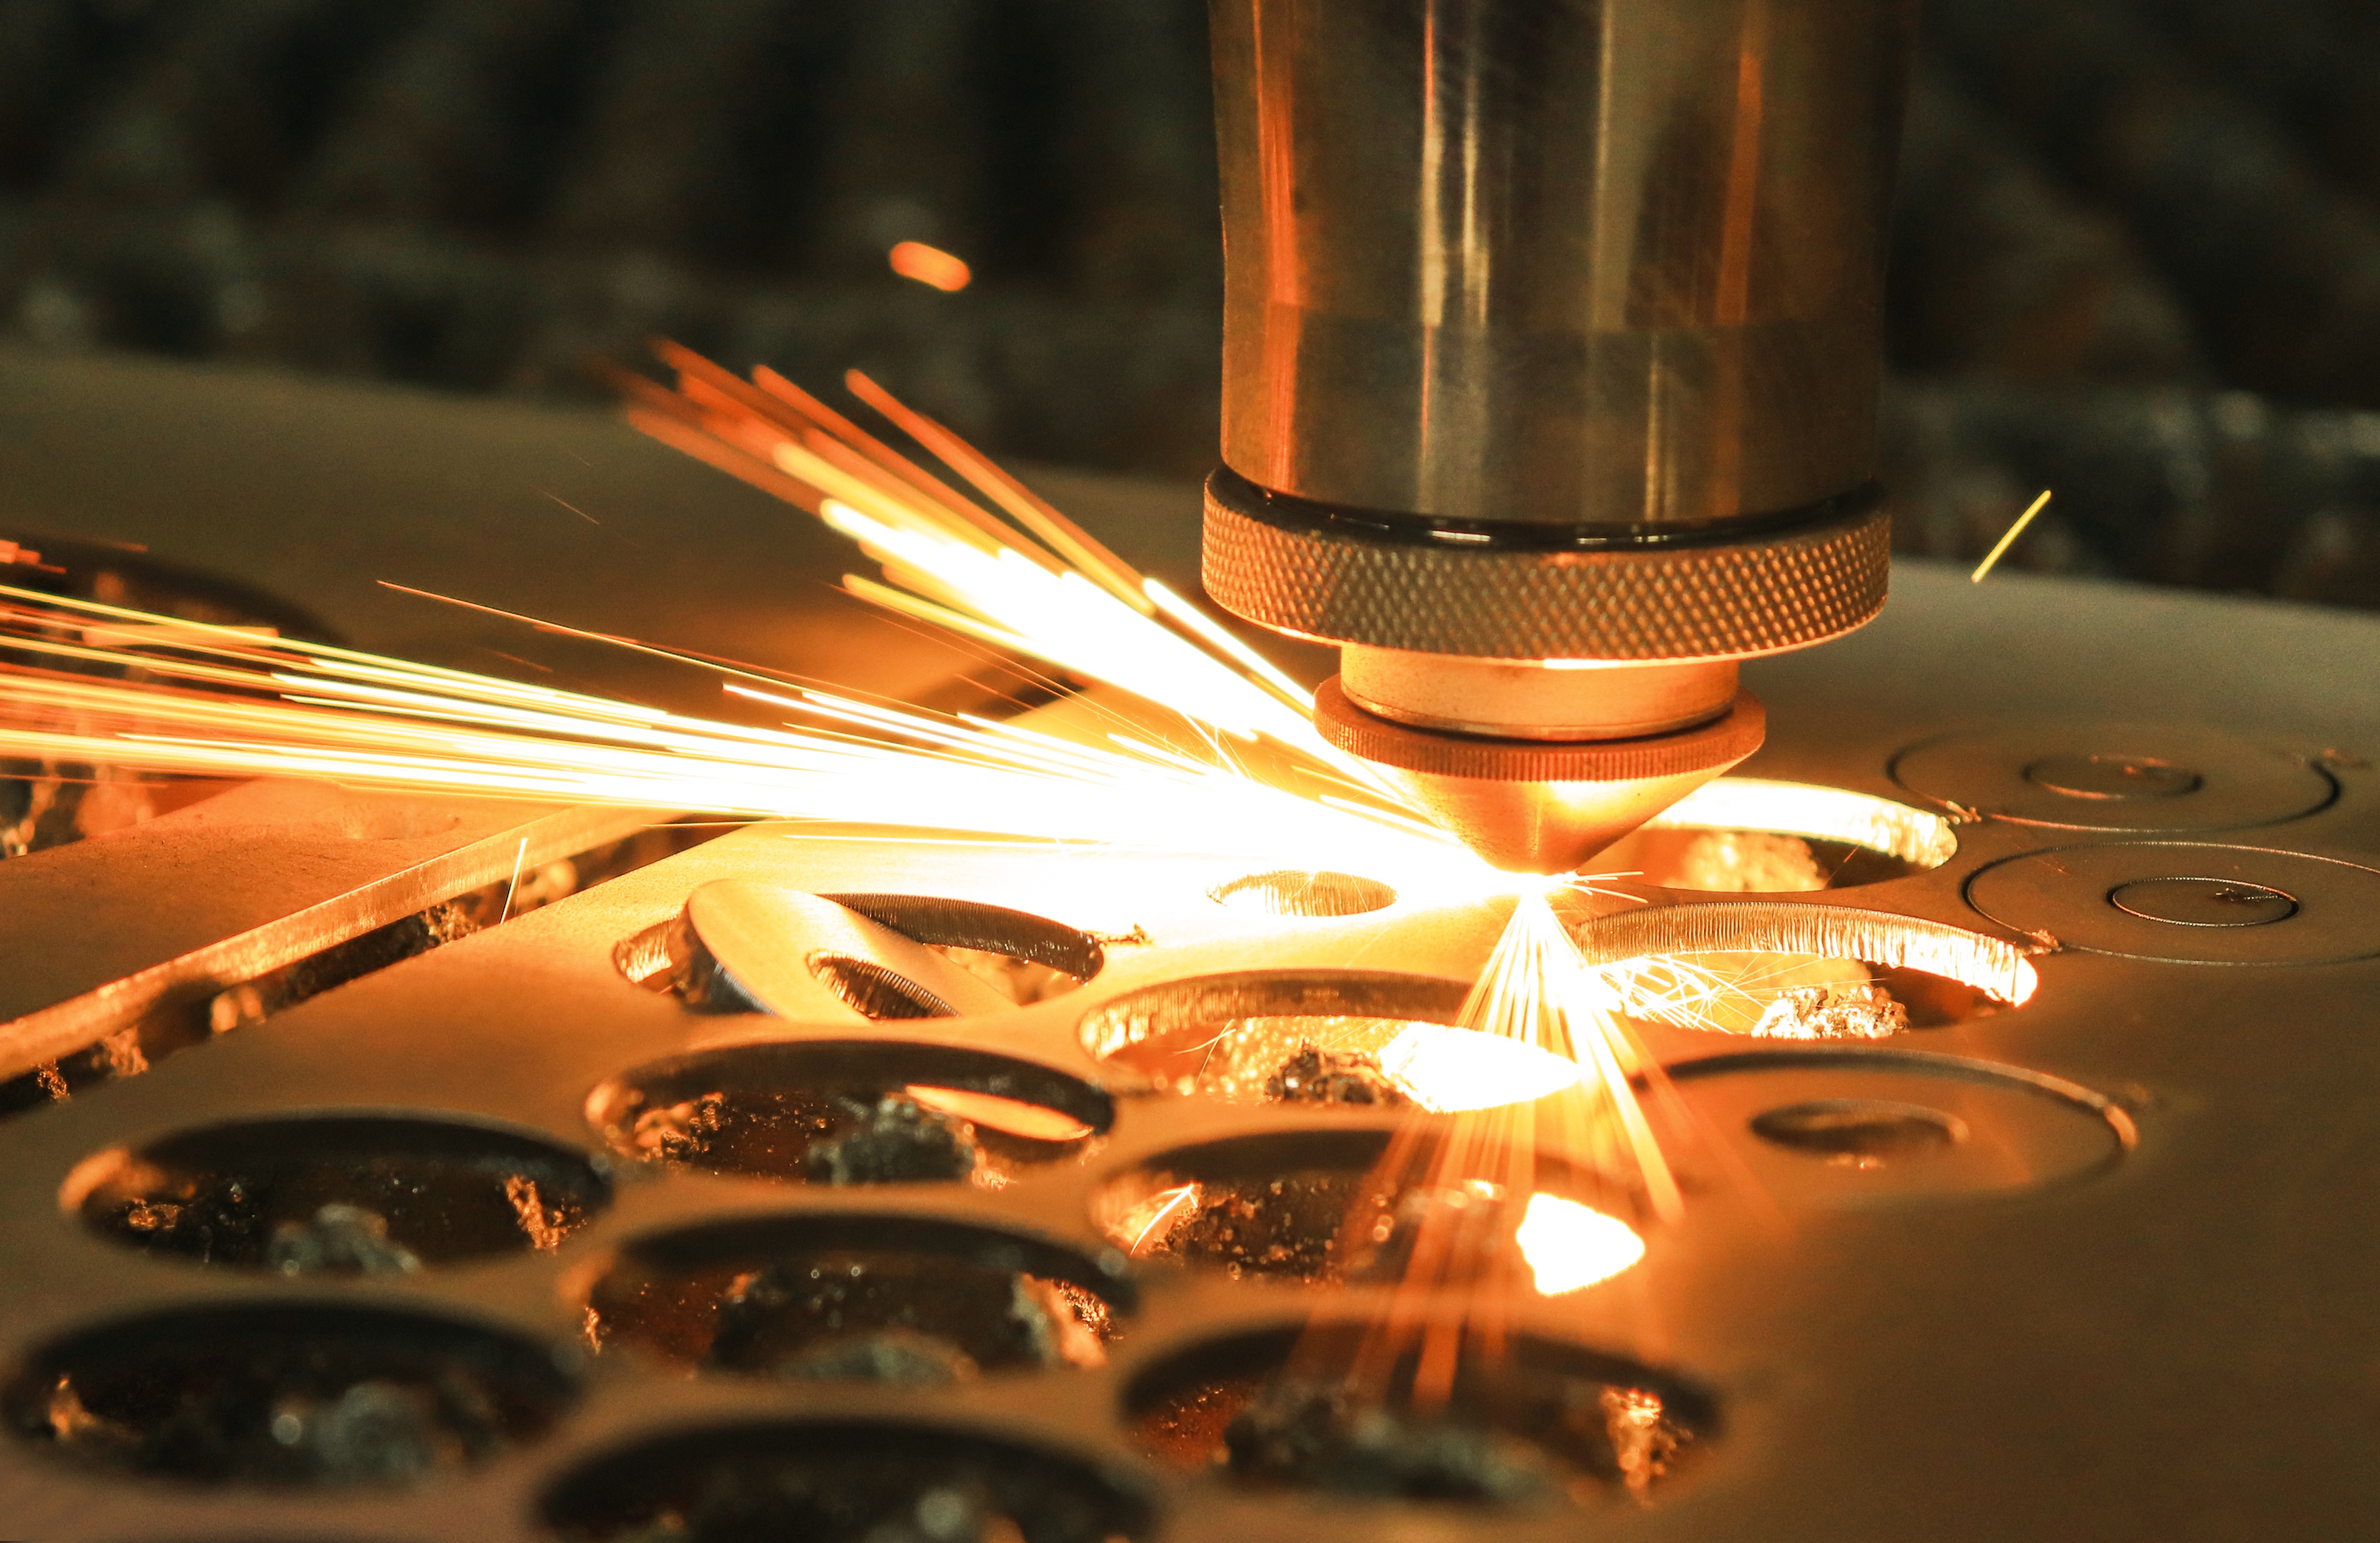 Laser cutting metal